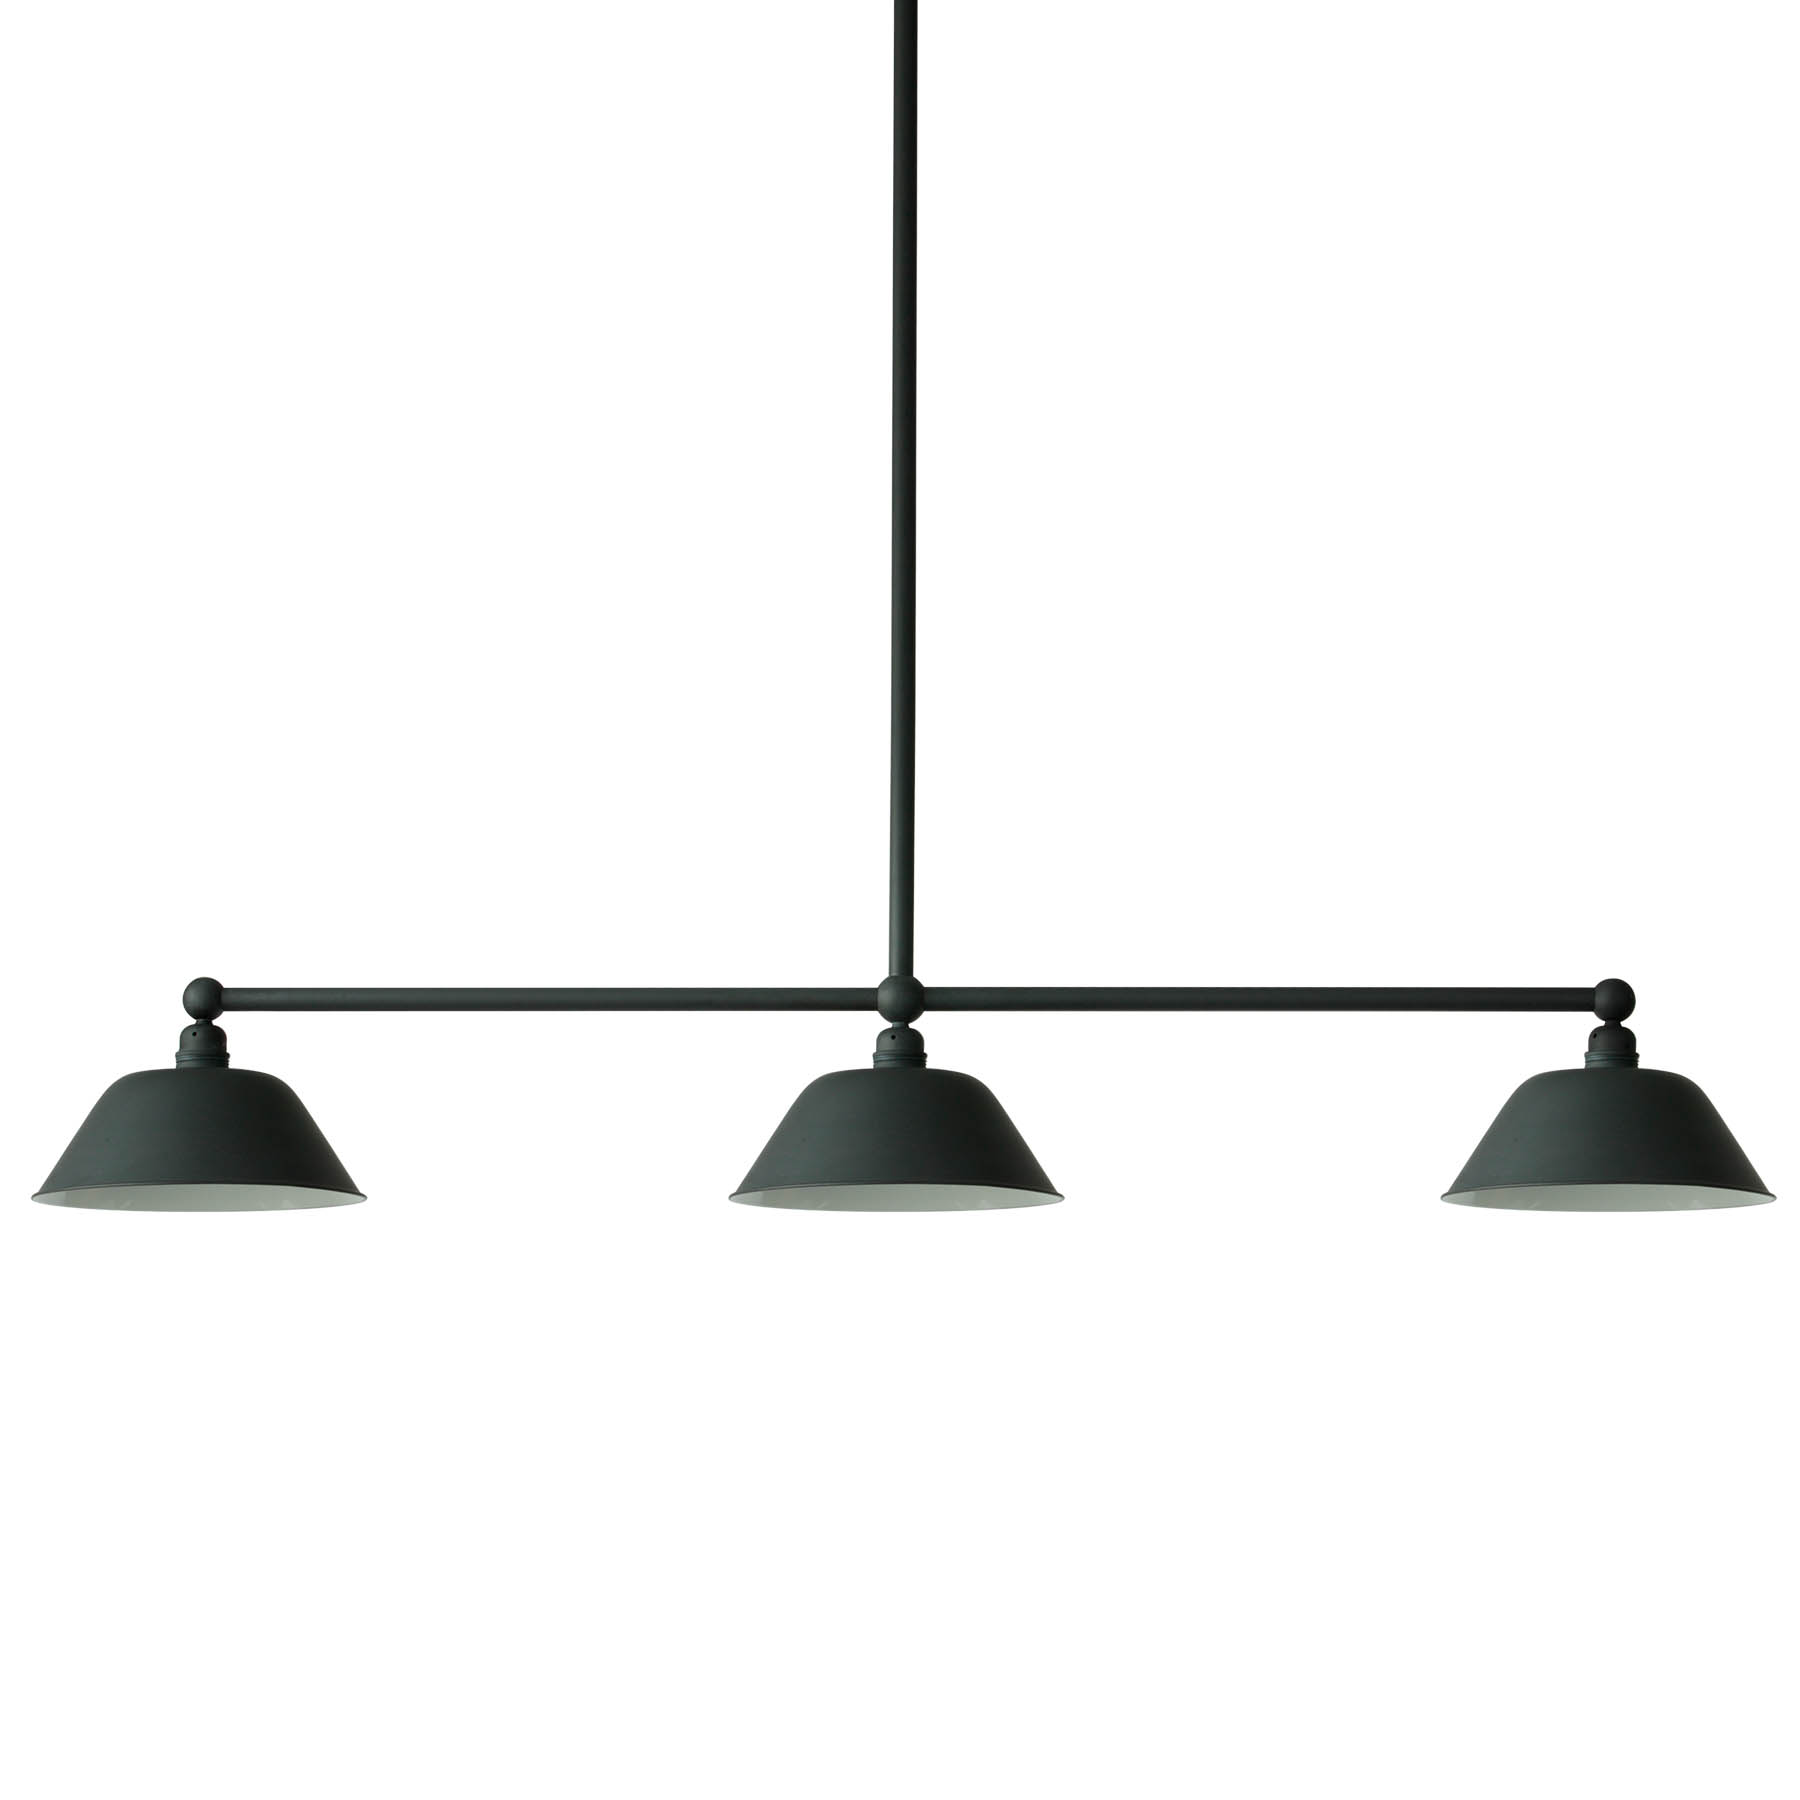 Beam Pendant Light for Longer Tables with Three Shades: Balkenlampe mit drei Schirmen zur Esstischbeleuchtung (hier Bleigrau)